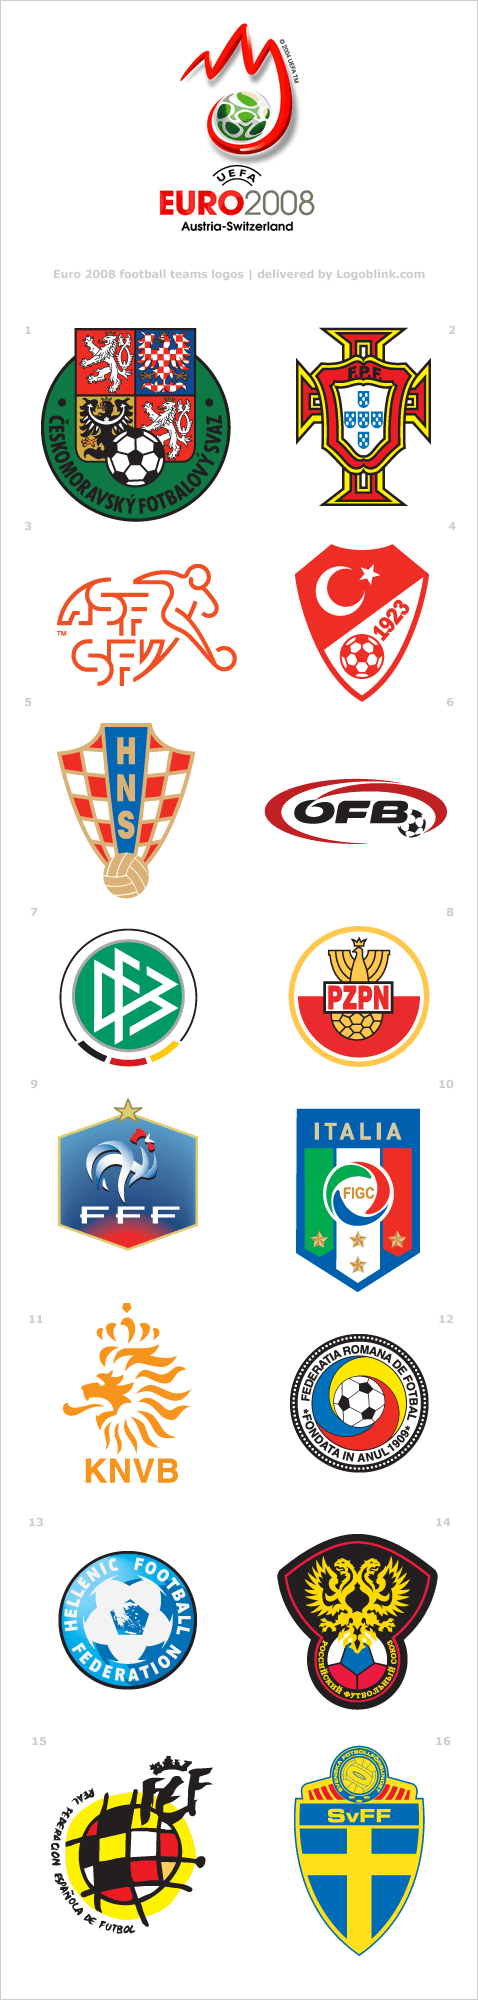 football logos euro designs